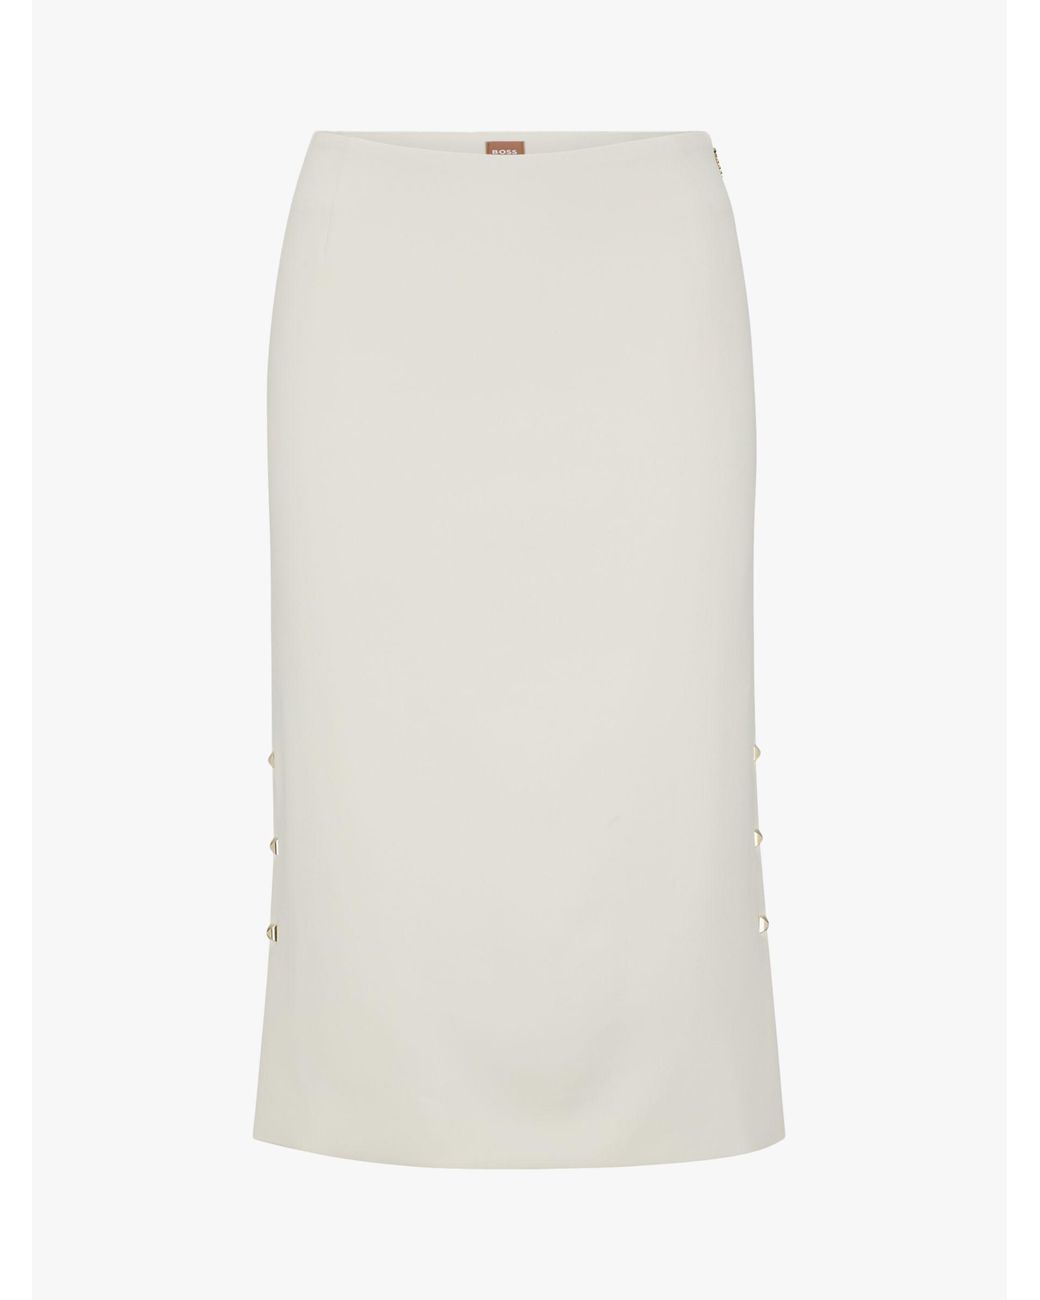 BOSS by HUGO BOSS Vevoka Knee Length Skirt in Natural | Lyst UK